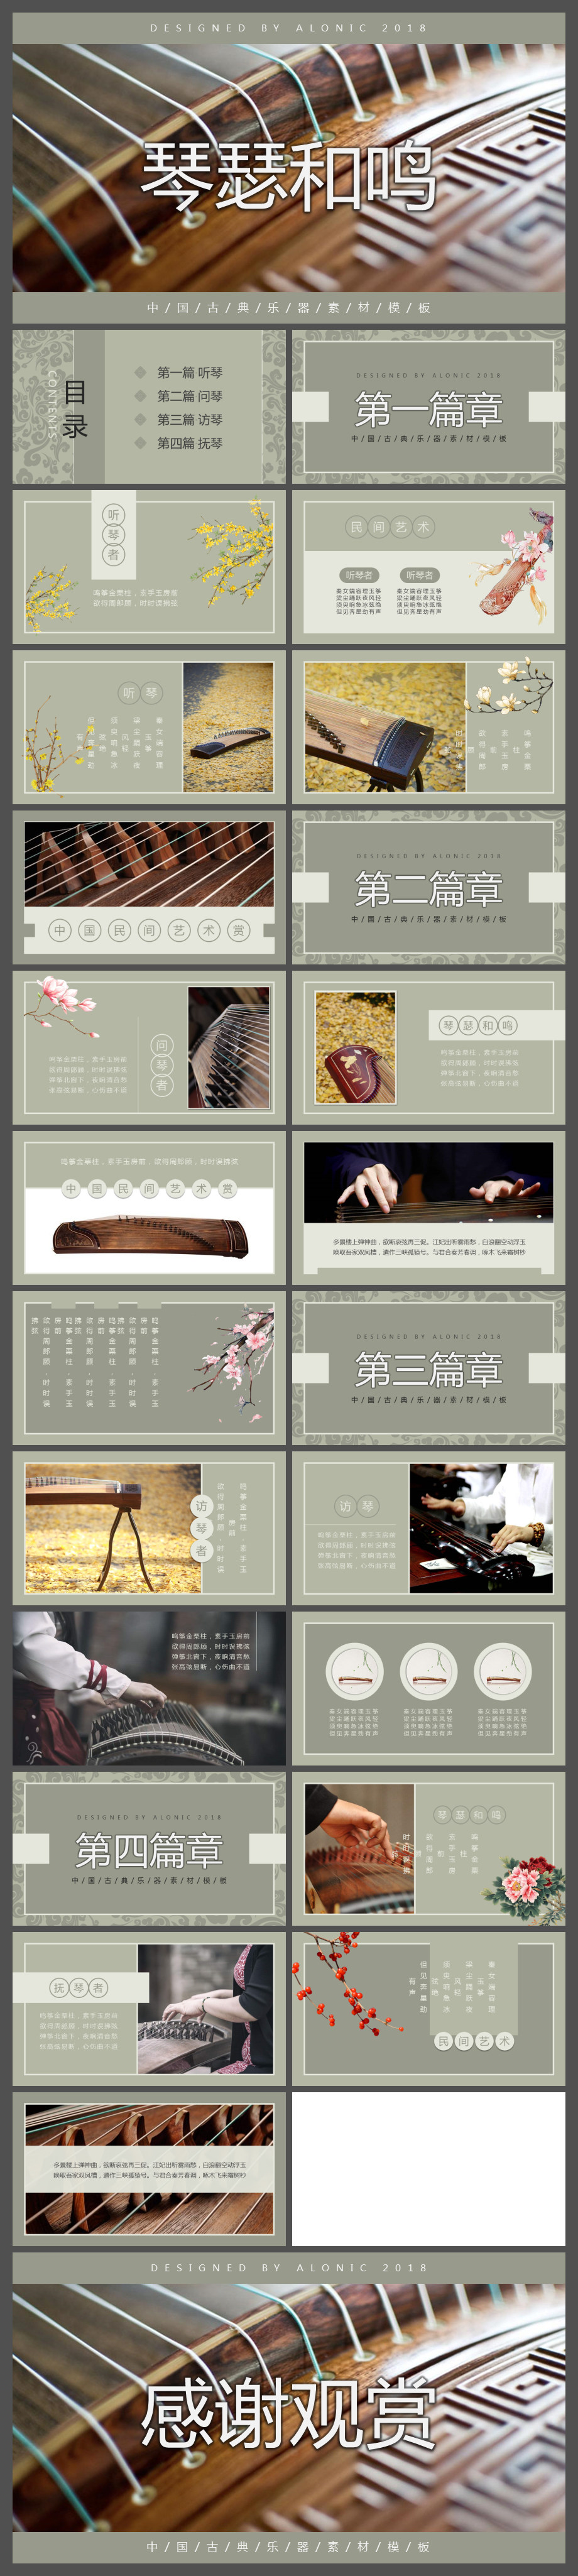 古典中国风民间艺术关于琴主题PPT模板